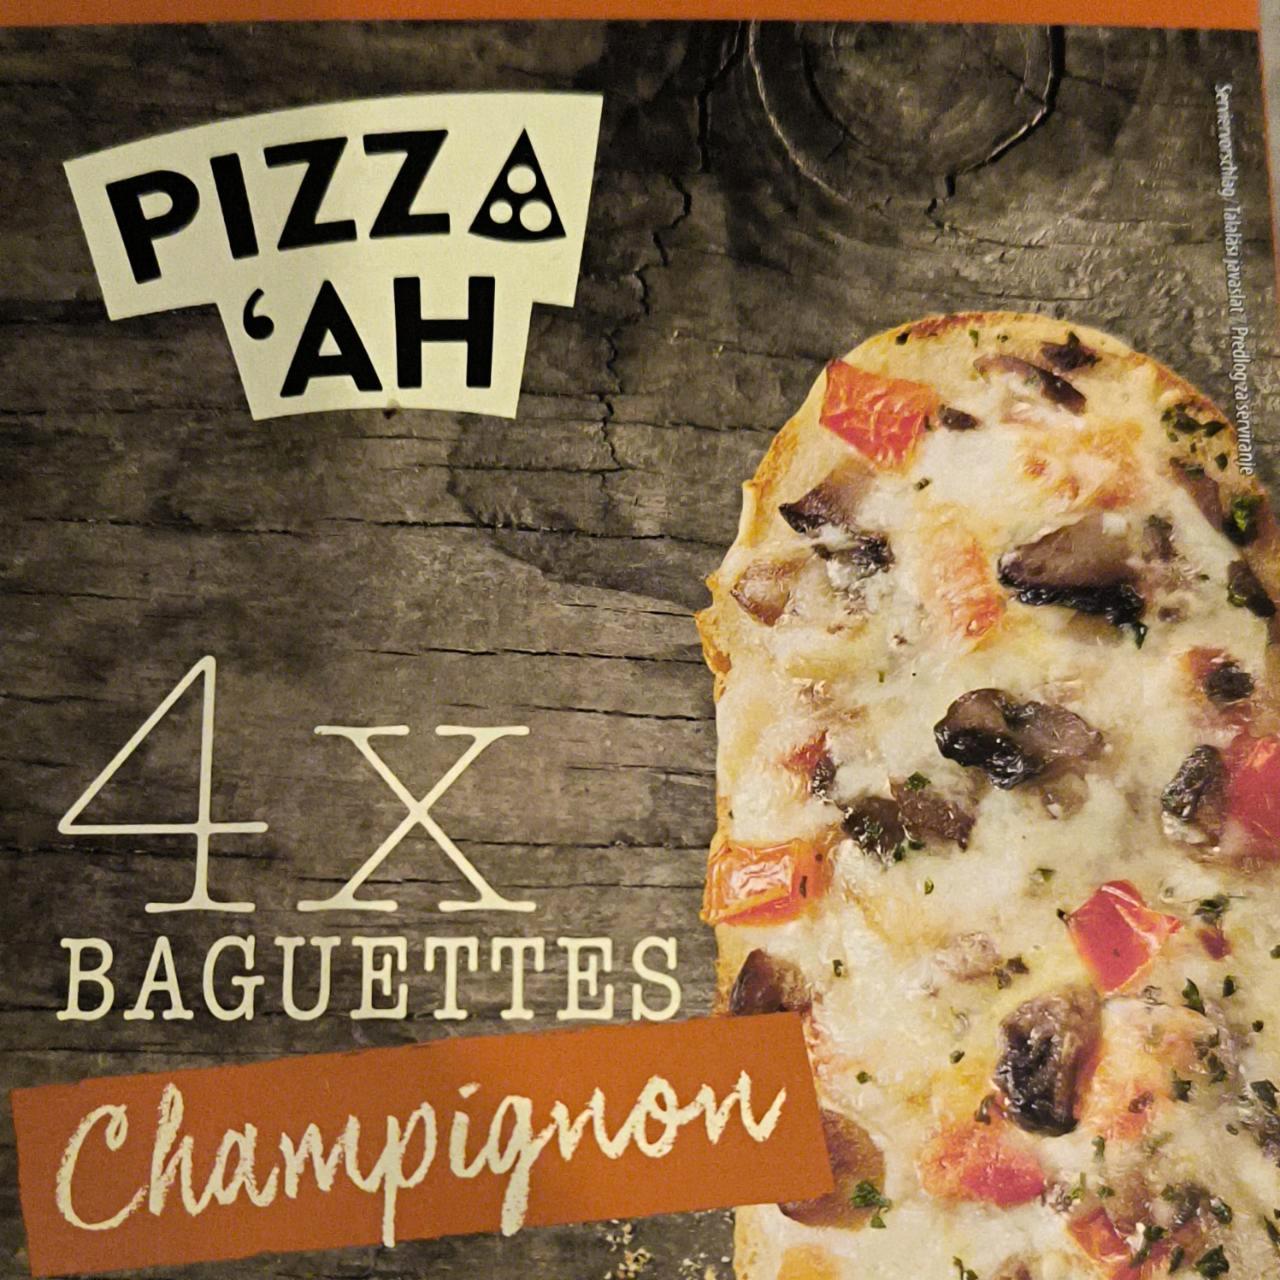 Képek - Baguettes Champignon Pizz'ah